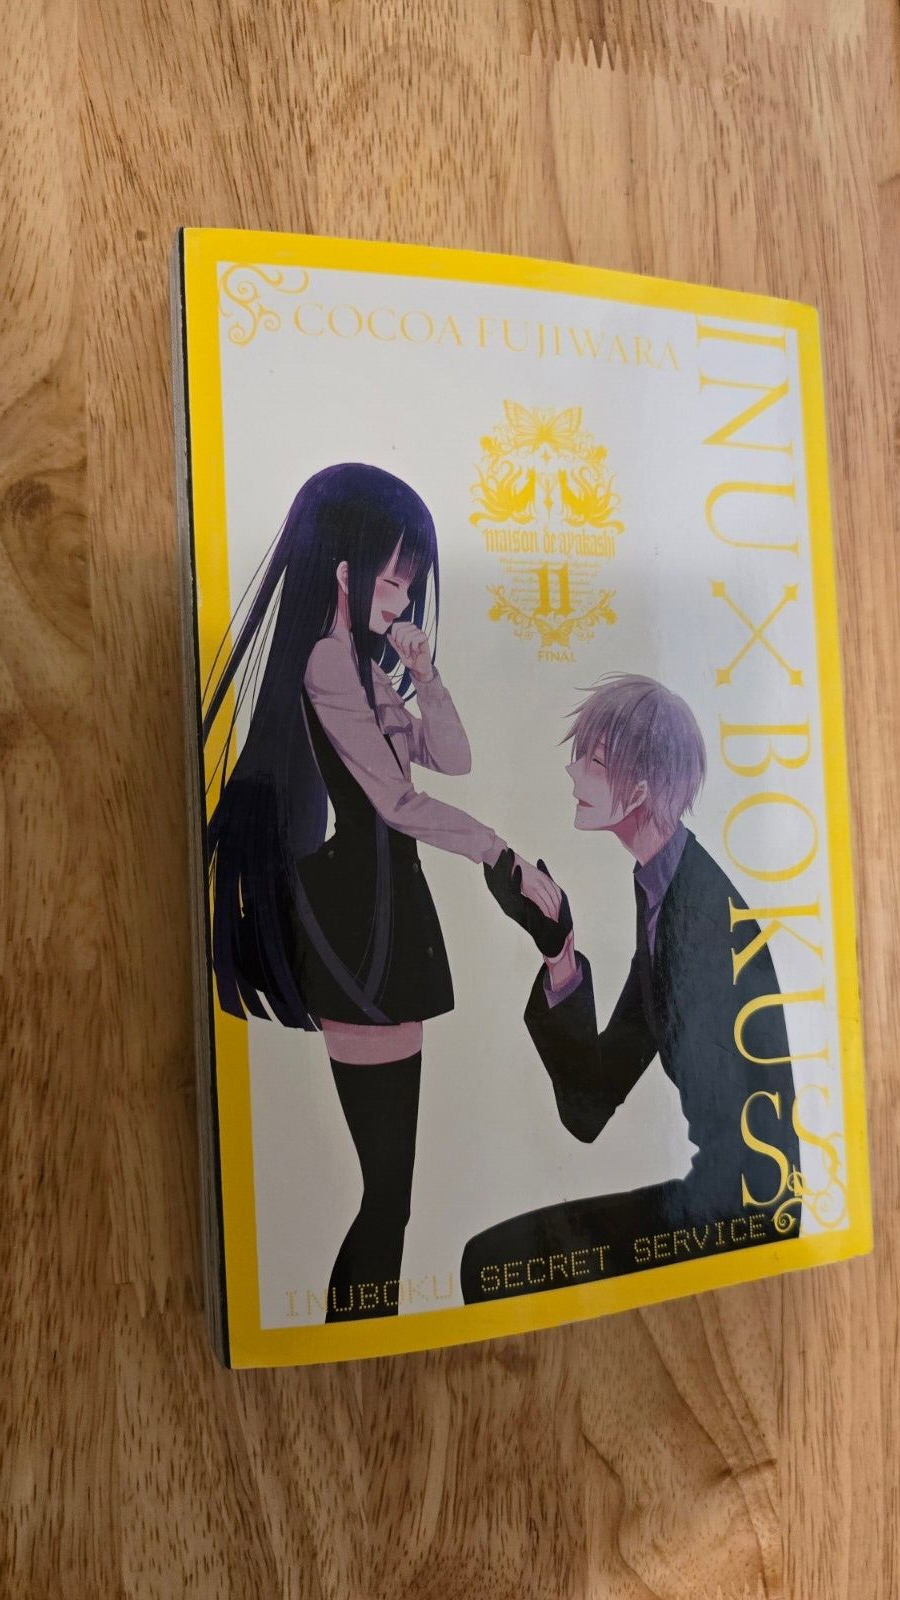 Inu X Boku SS, Vol. 11 by Cocoa Fujiwara, English Manga Paperback